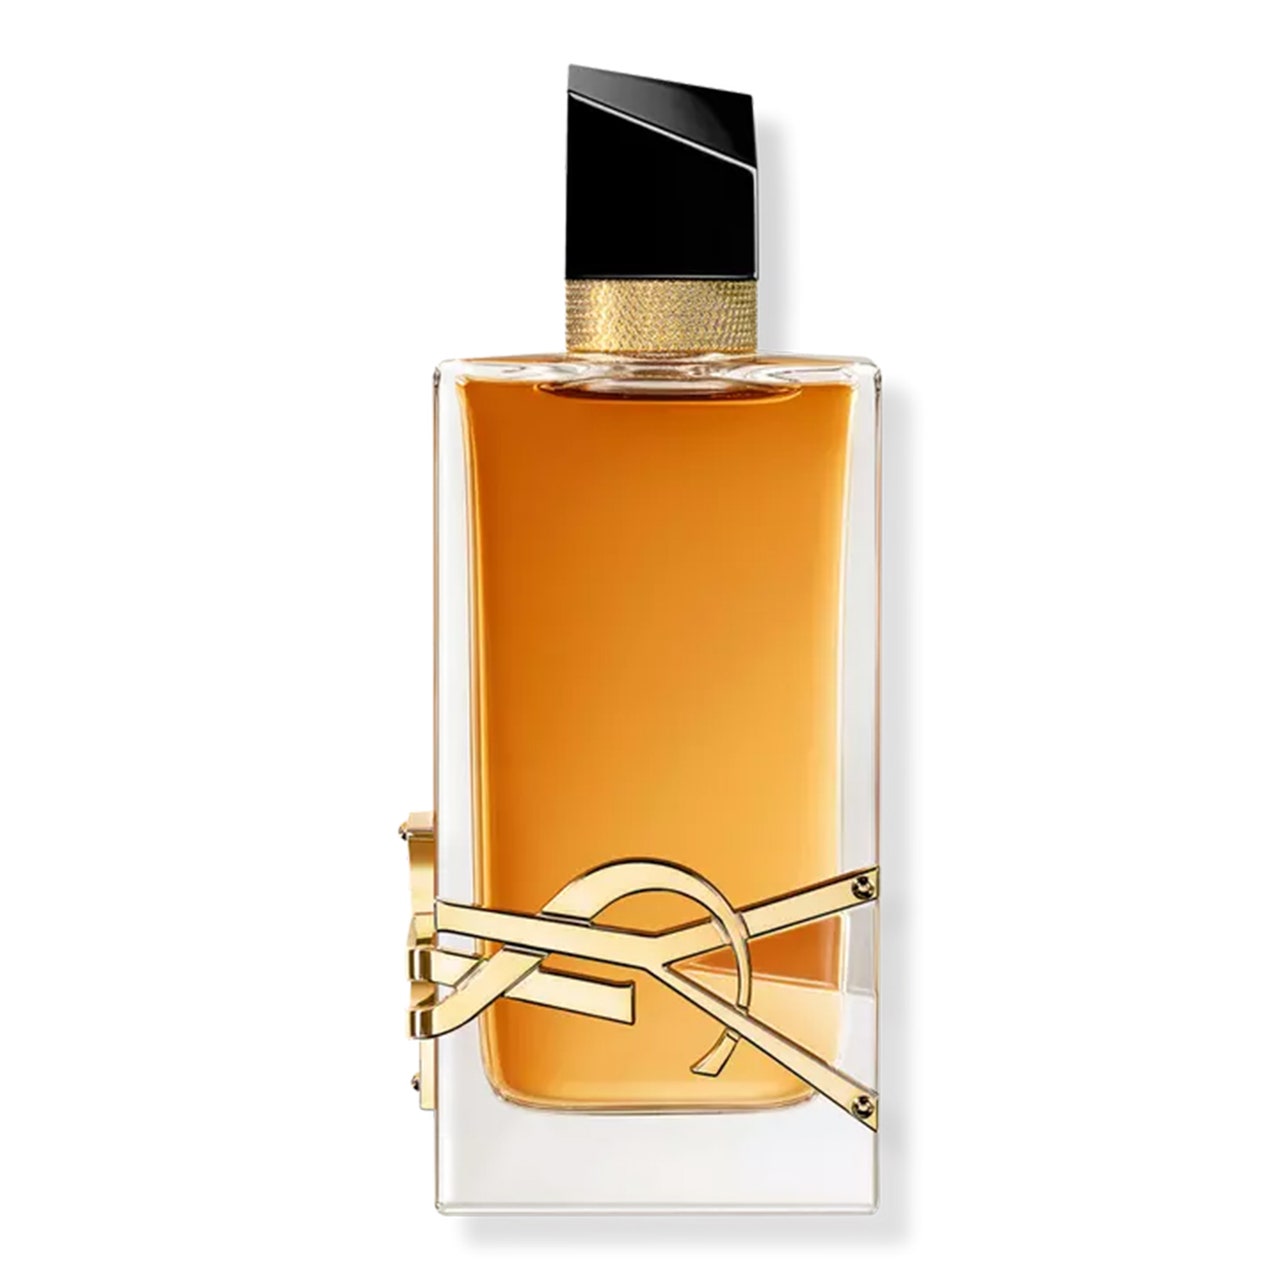 YSL Libre Eau de Parfum. Intensive rechteckige Flasche mit bernsteinfarbenem Parfüm mit schwarzem Verschluss auf weißem Hintergrund